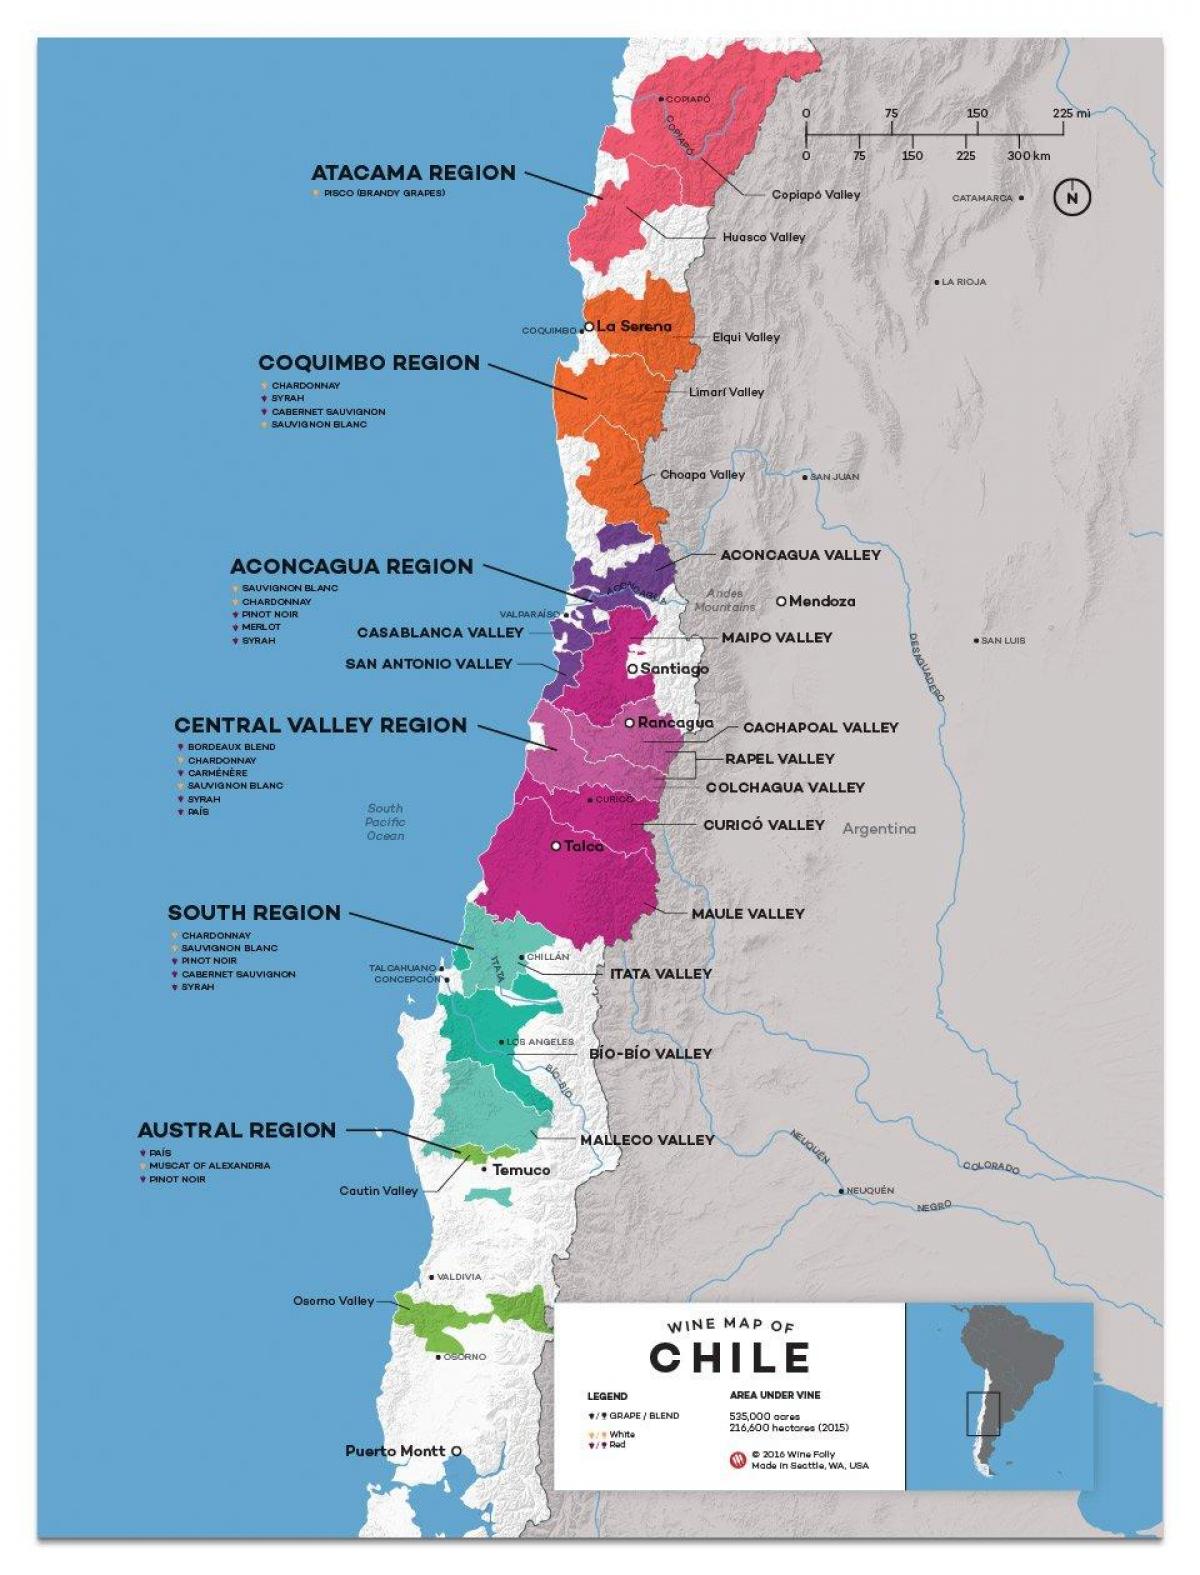 ჩილეს ღვინის ქვეყანა რუკა